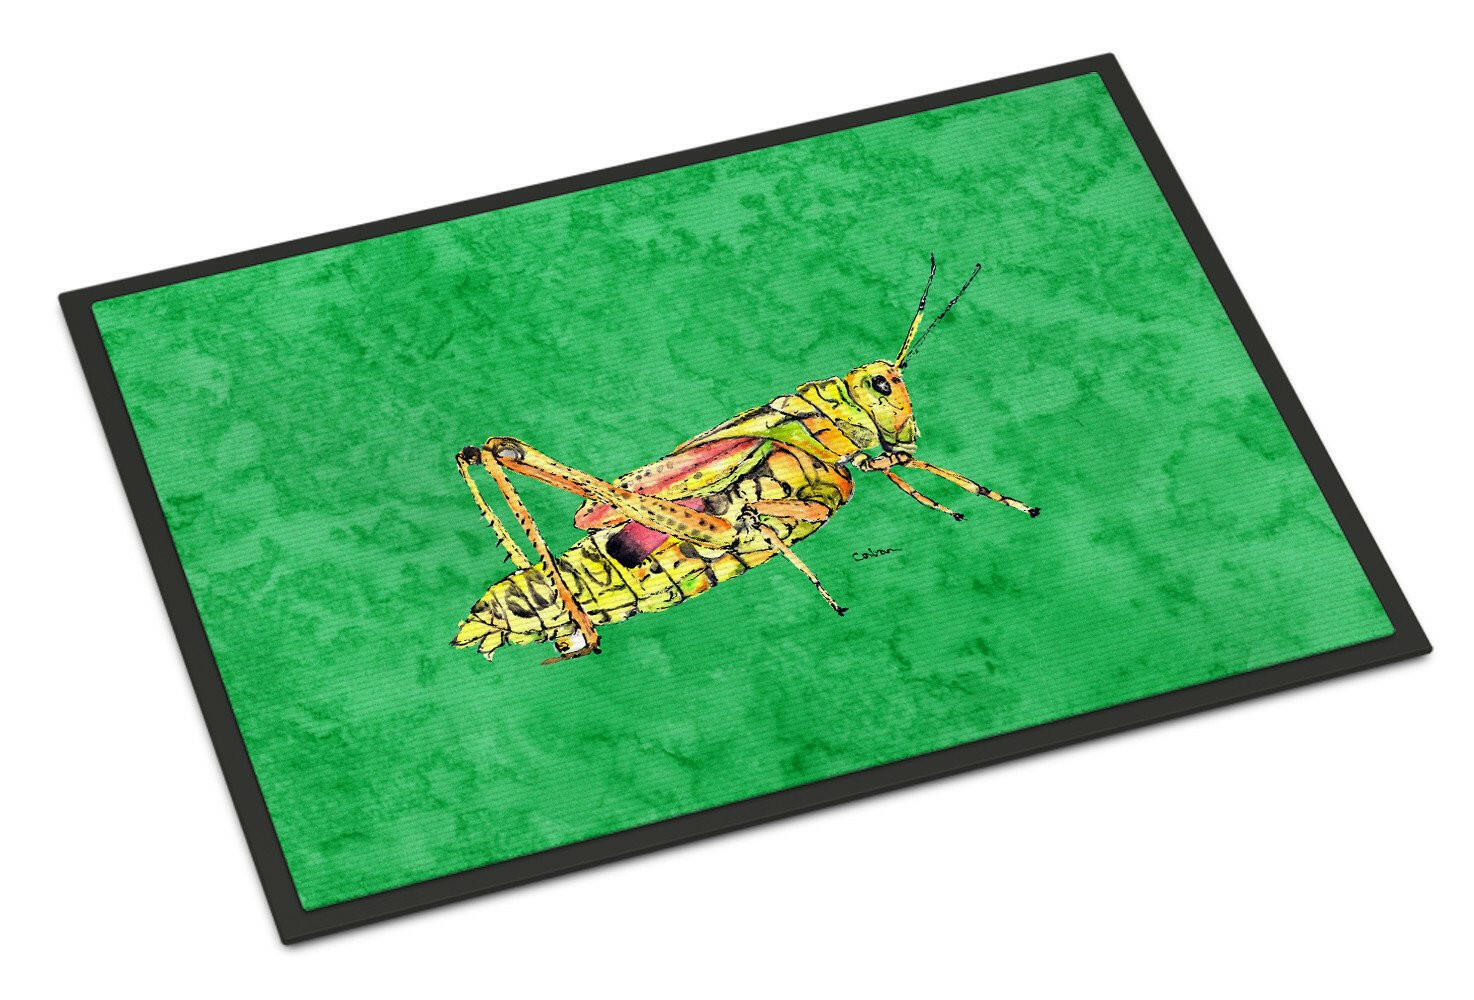 Grasshopper on Green Indoor or Outdoor Mat 24x36 Doormat - the-store.com